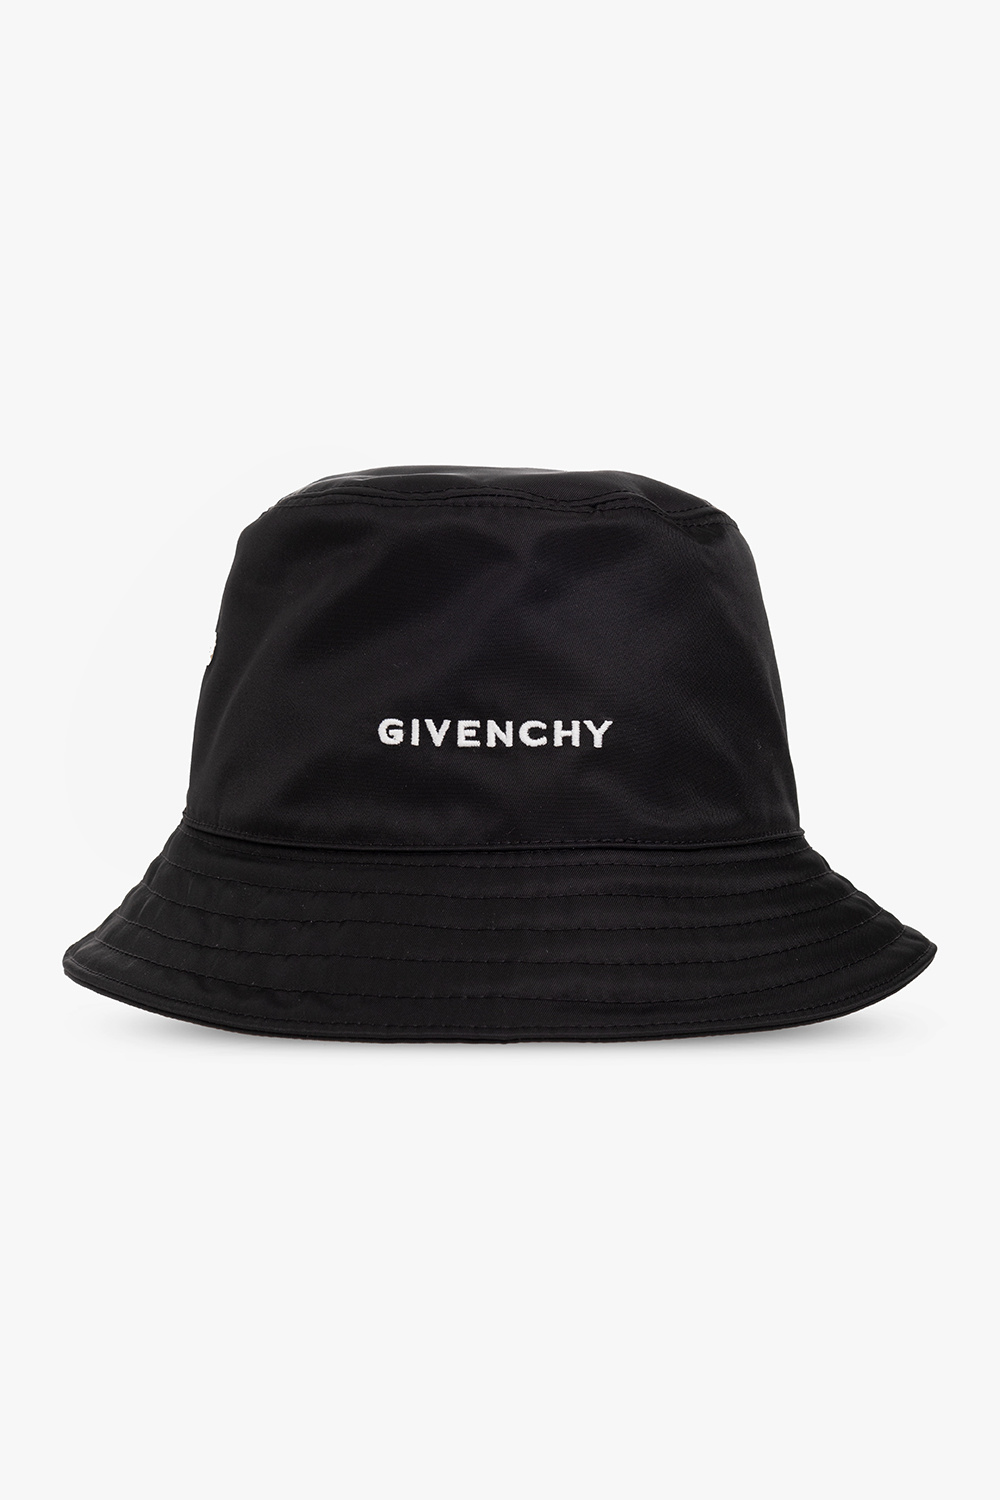 Black Bucket Hat XL, Men's Fashion, Watches & Accessories, Caps